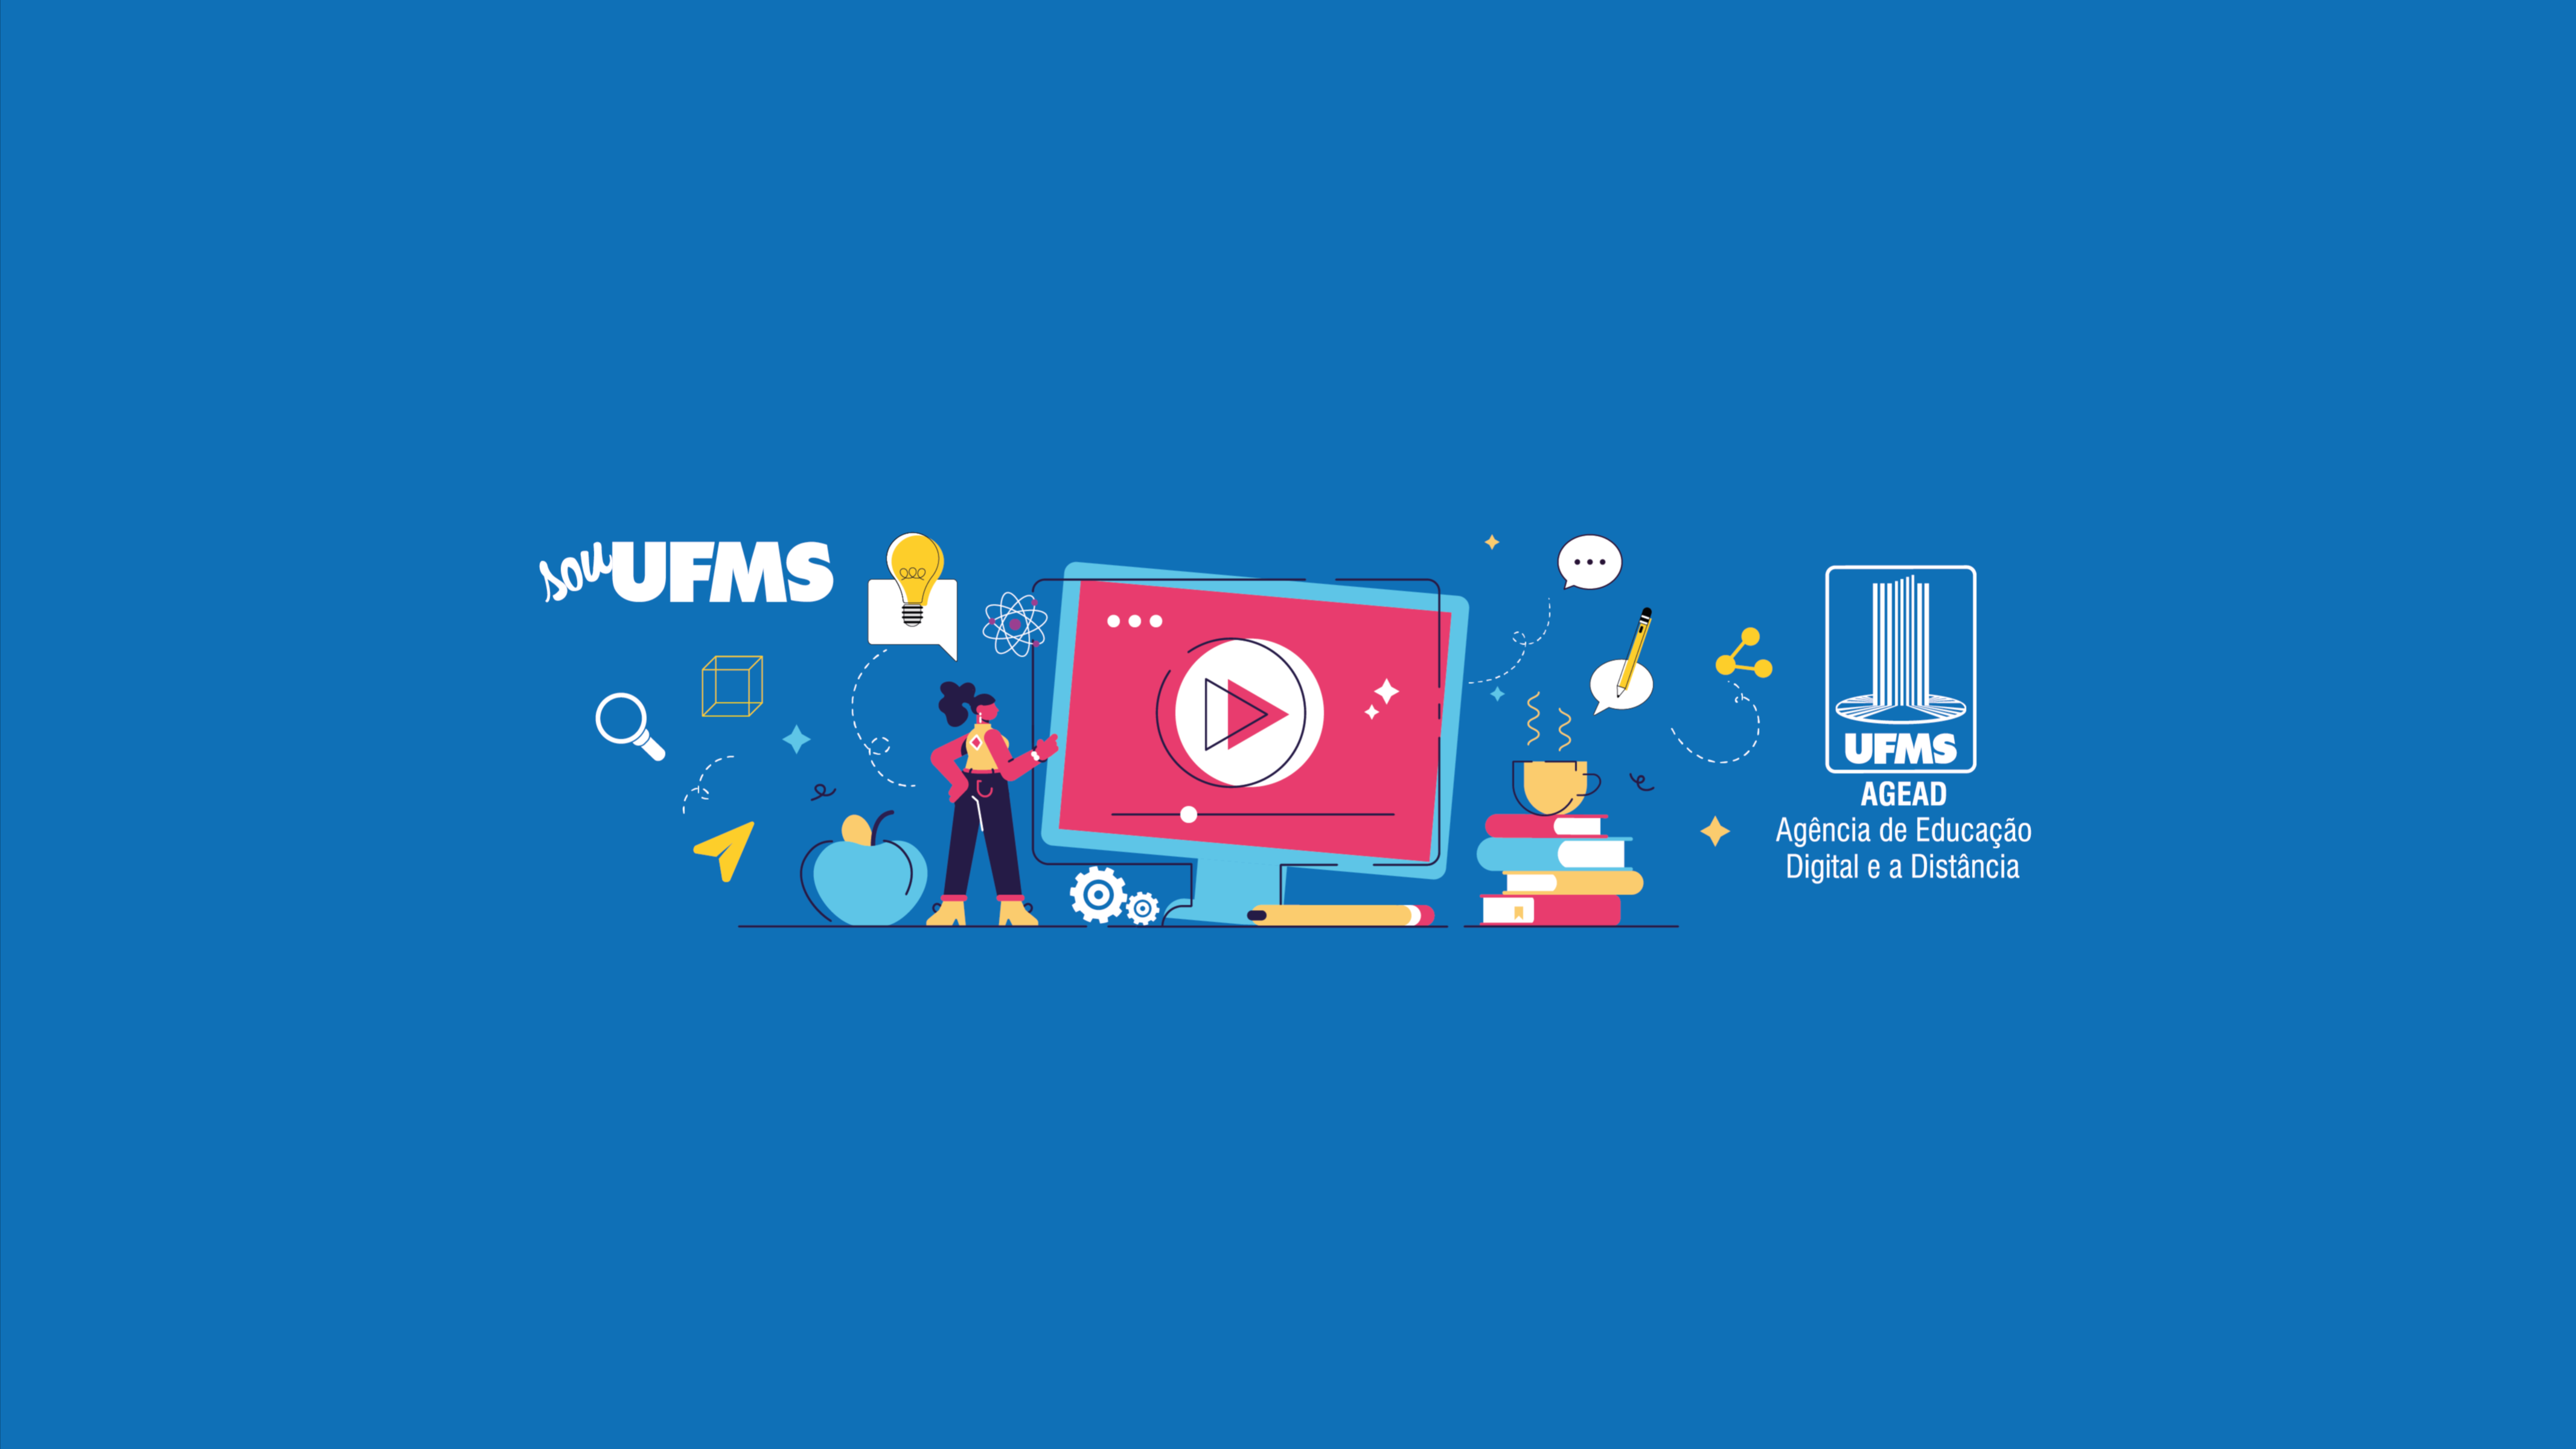 Agência de Educação Digital e a Distância - UFMS